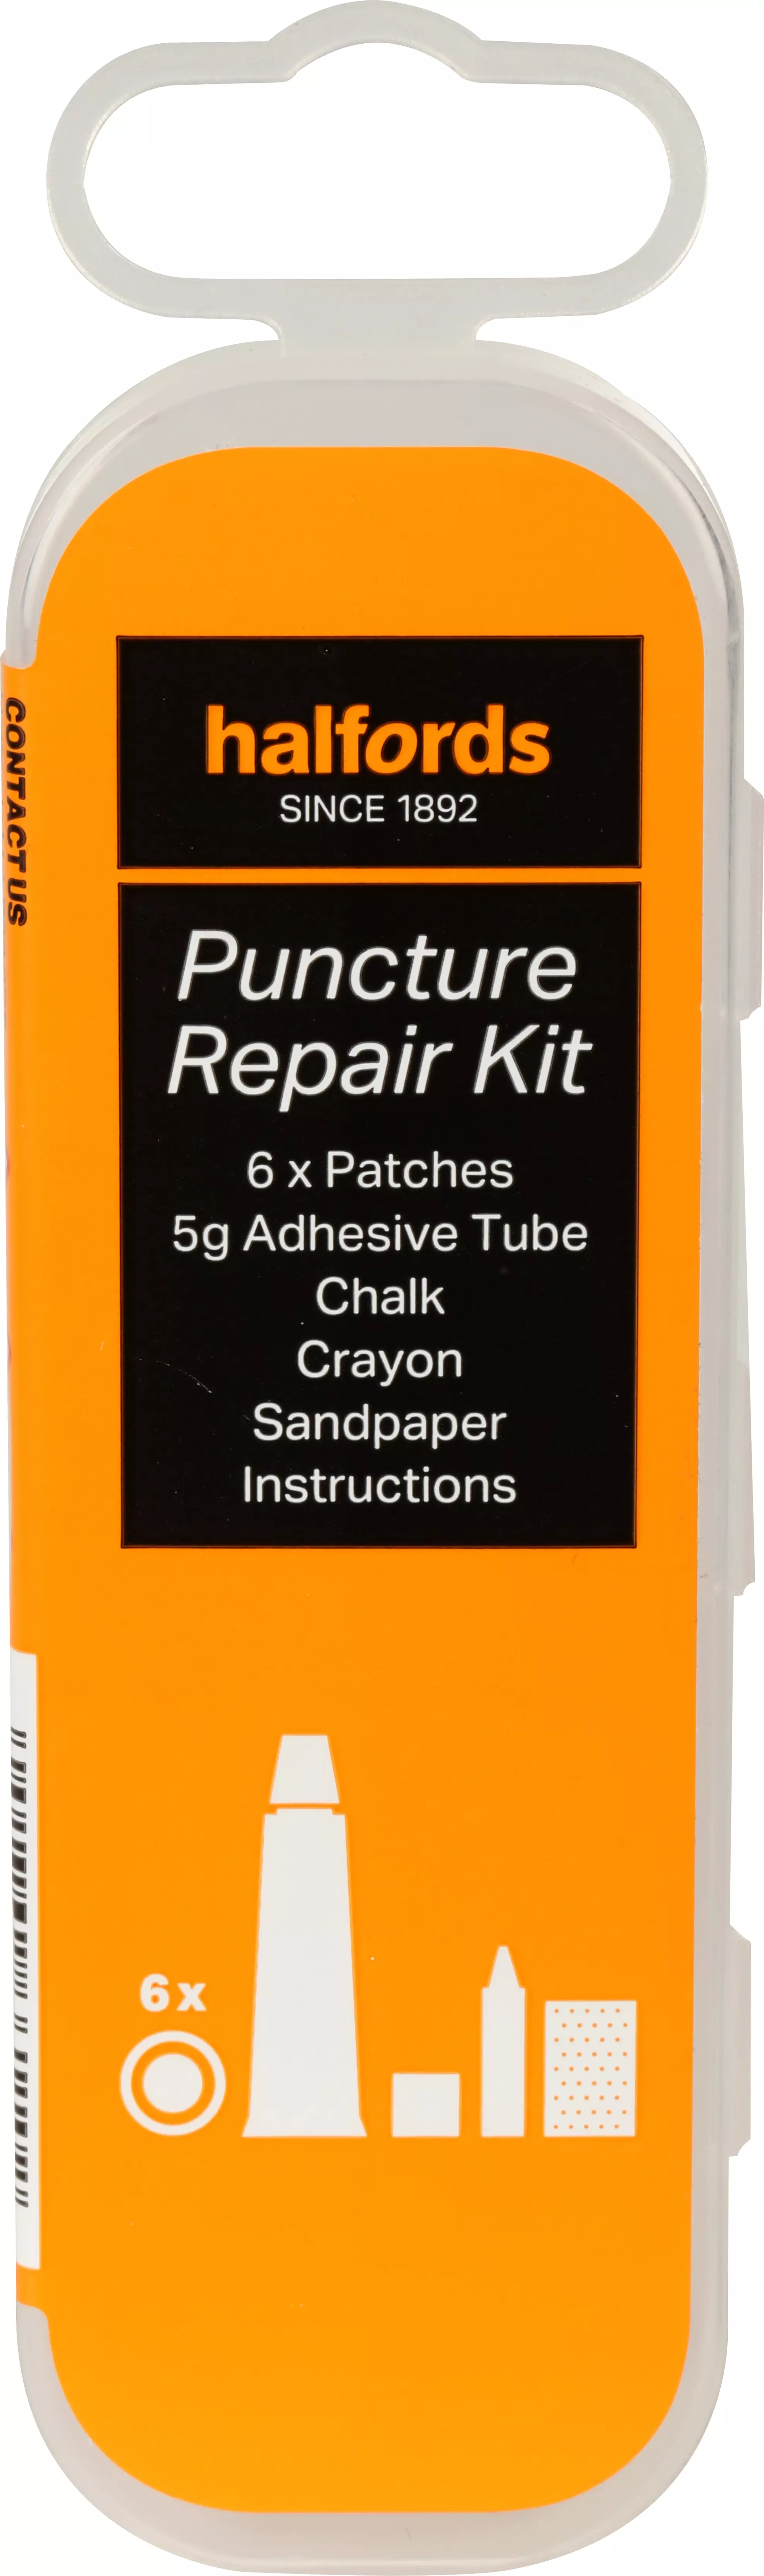 halford puncture repair kit